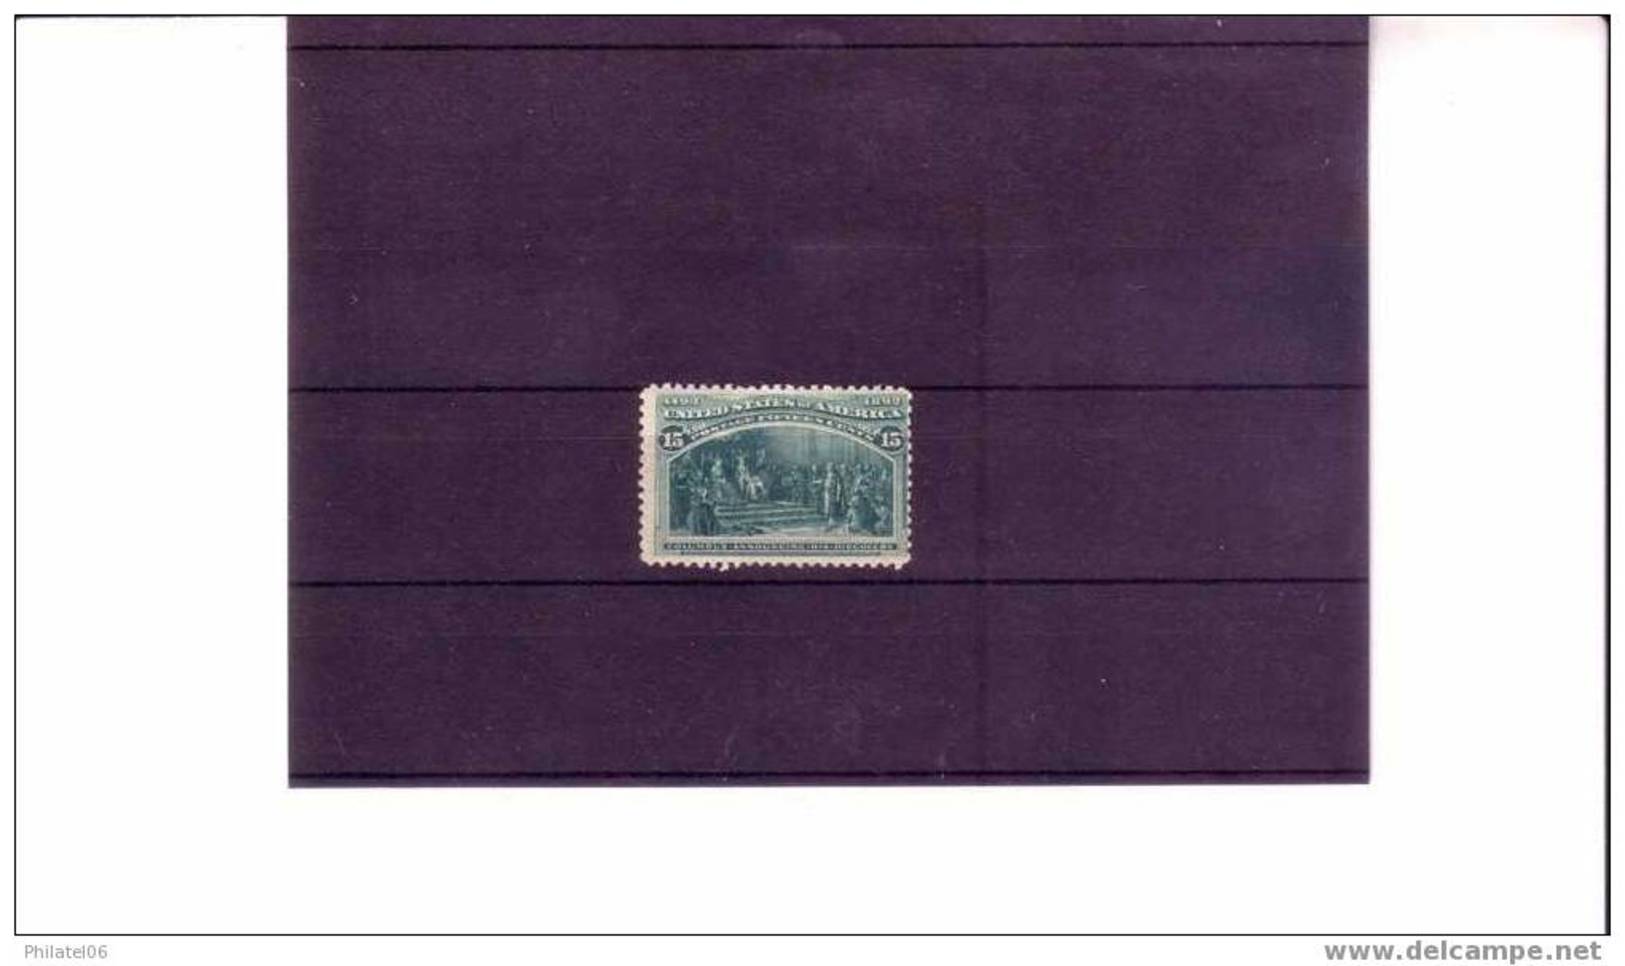 TIMBRE TRES FRAIS   GOMME D'ORIGINE  INFIME CLAIR DE CHARNIERE   COTE:235 EUROS - Unused Stamps